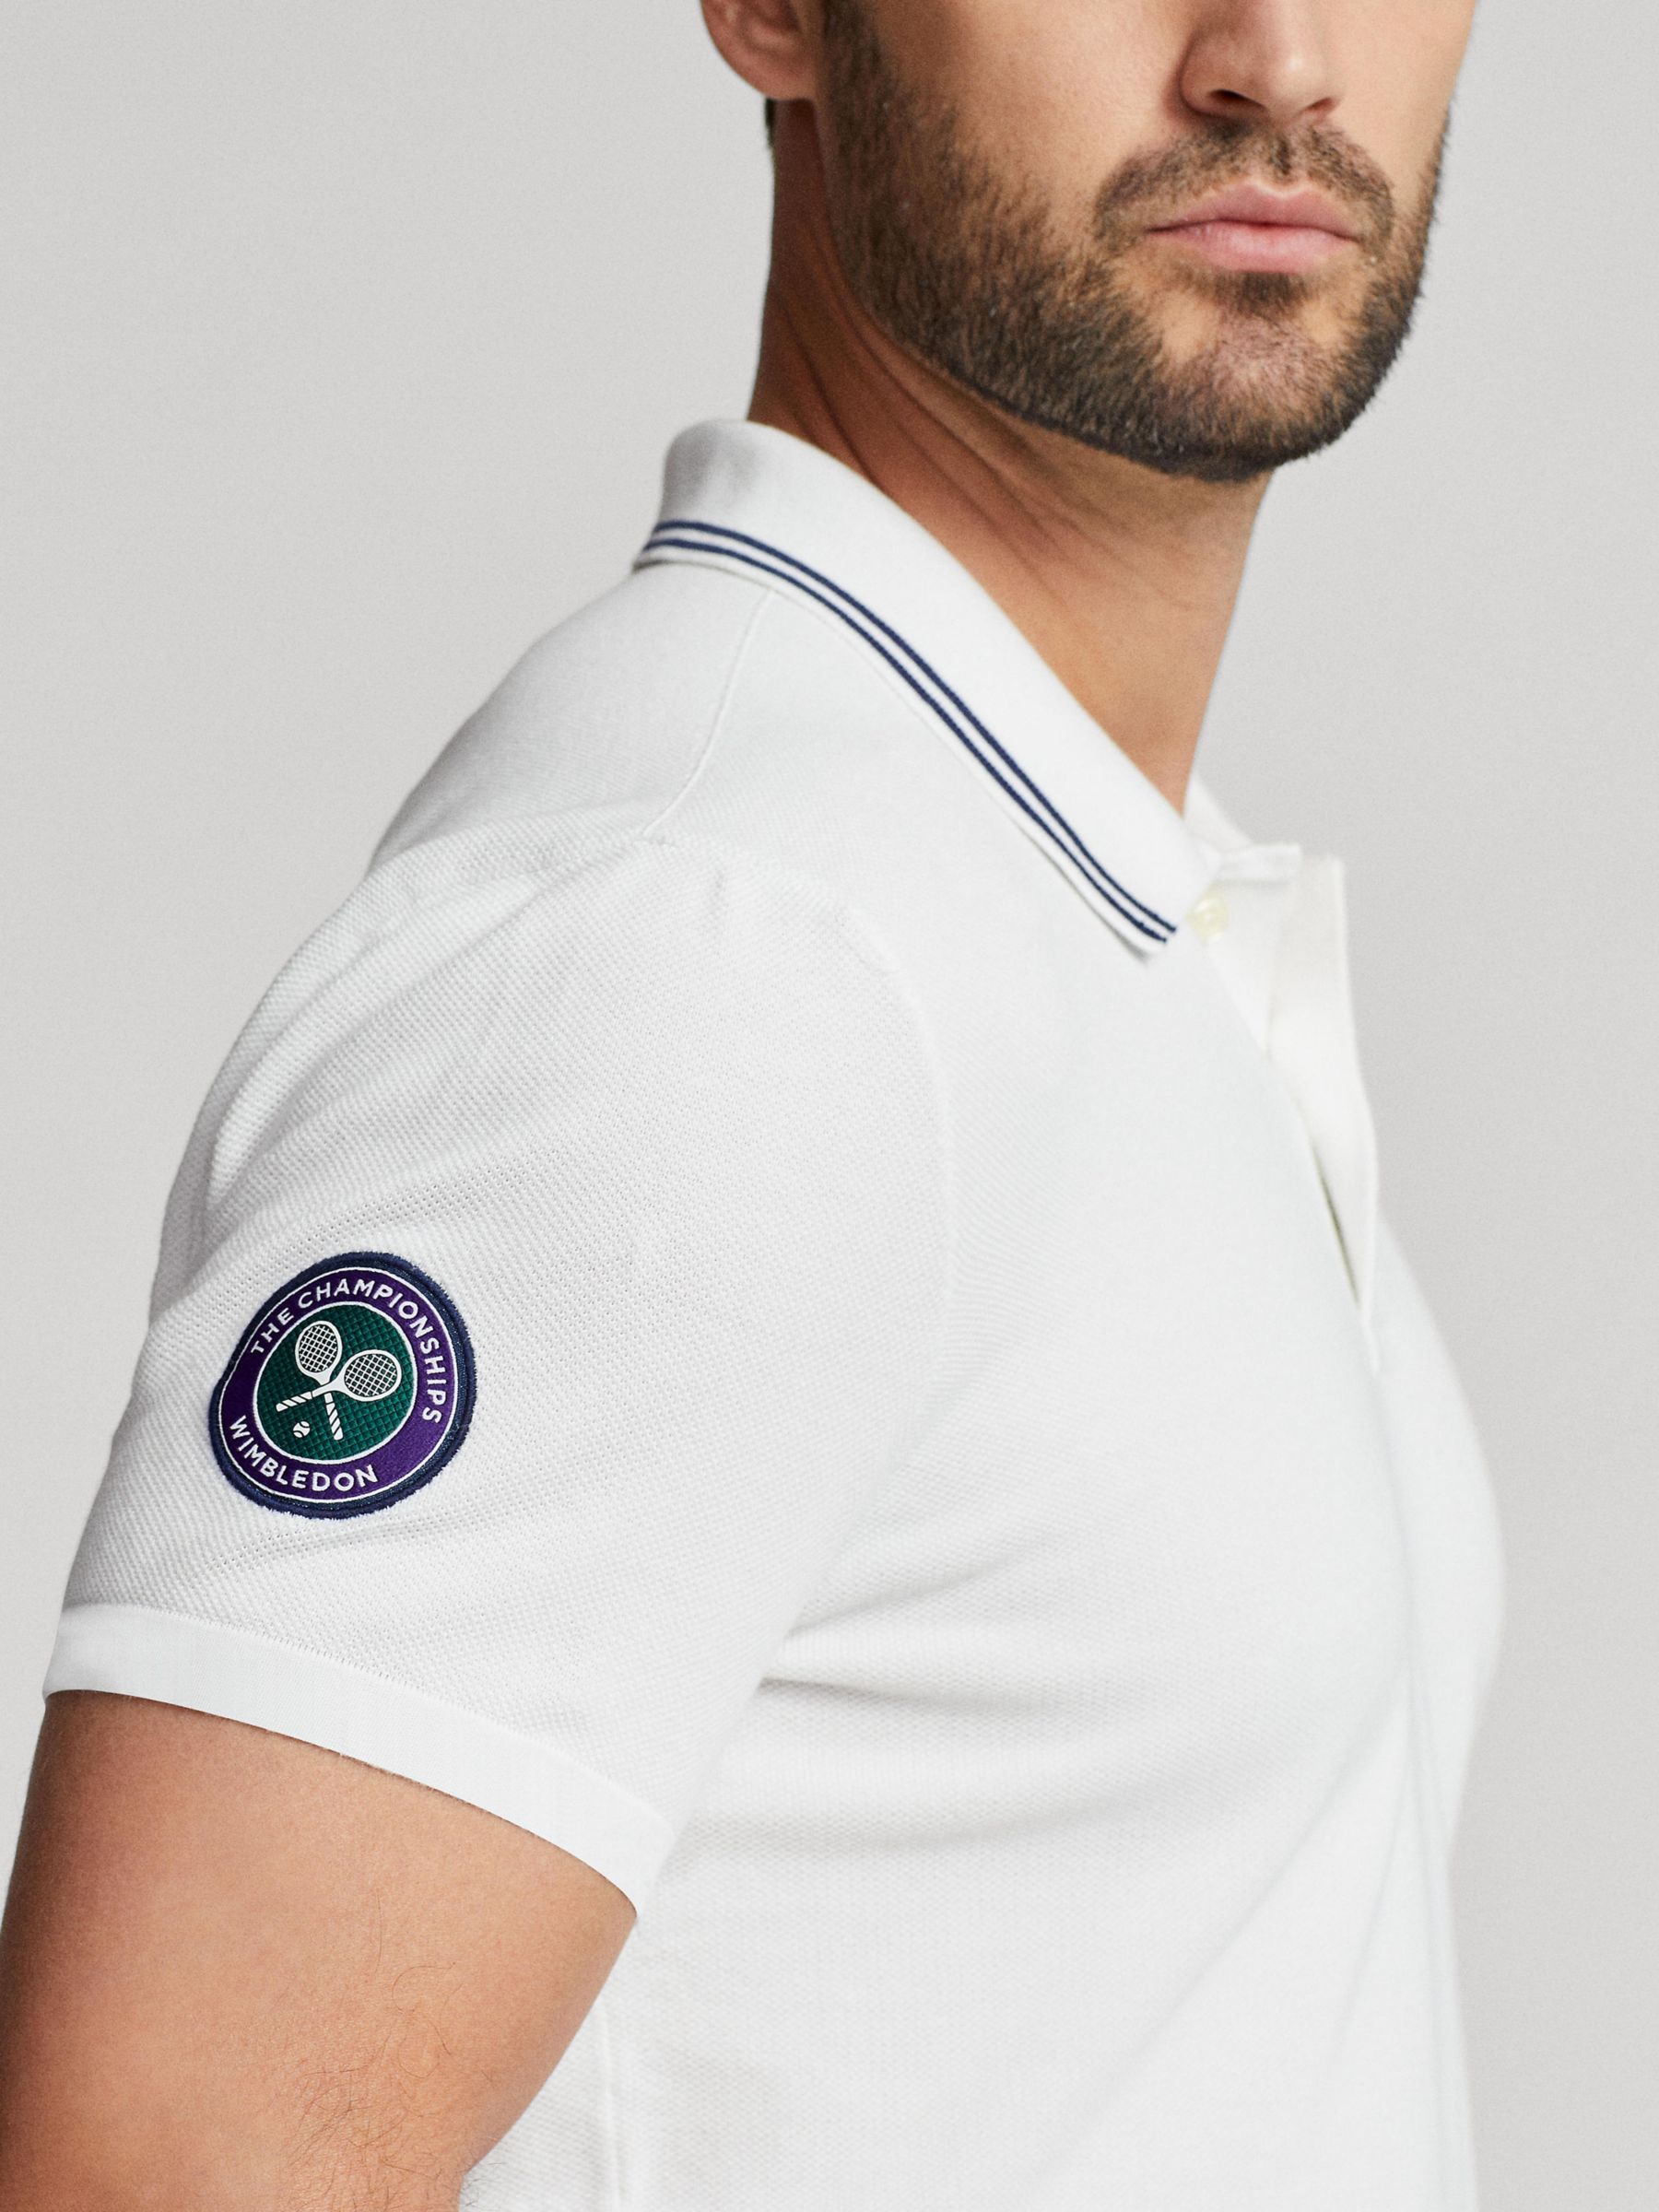 The Wimbledon Online Shop ︳ Wimbledon x Polo Ralph Lauren Men's